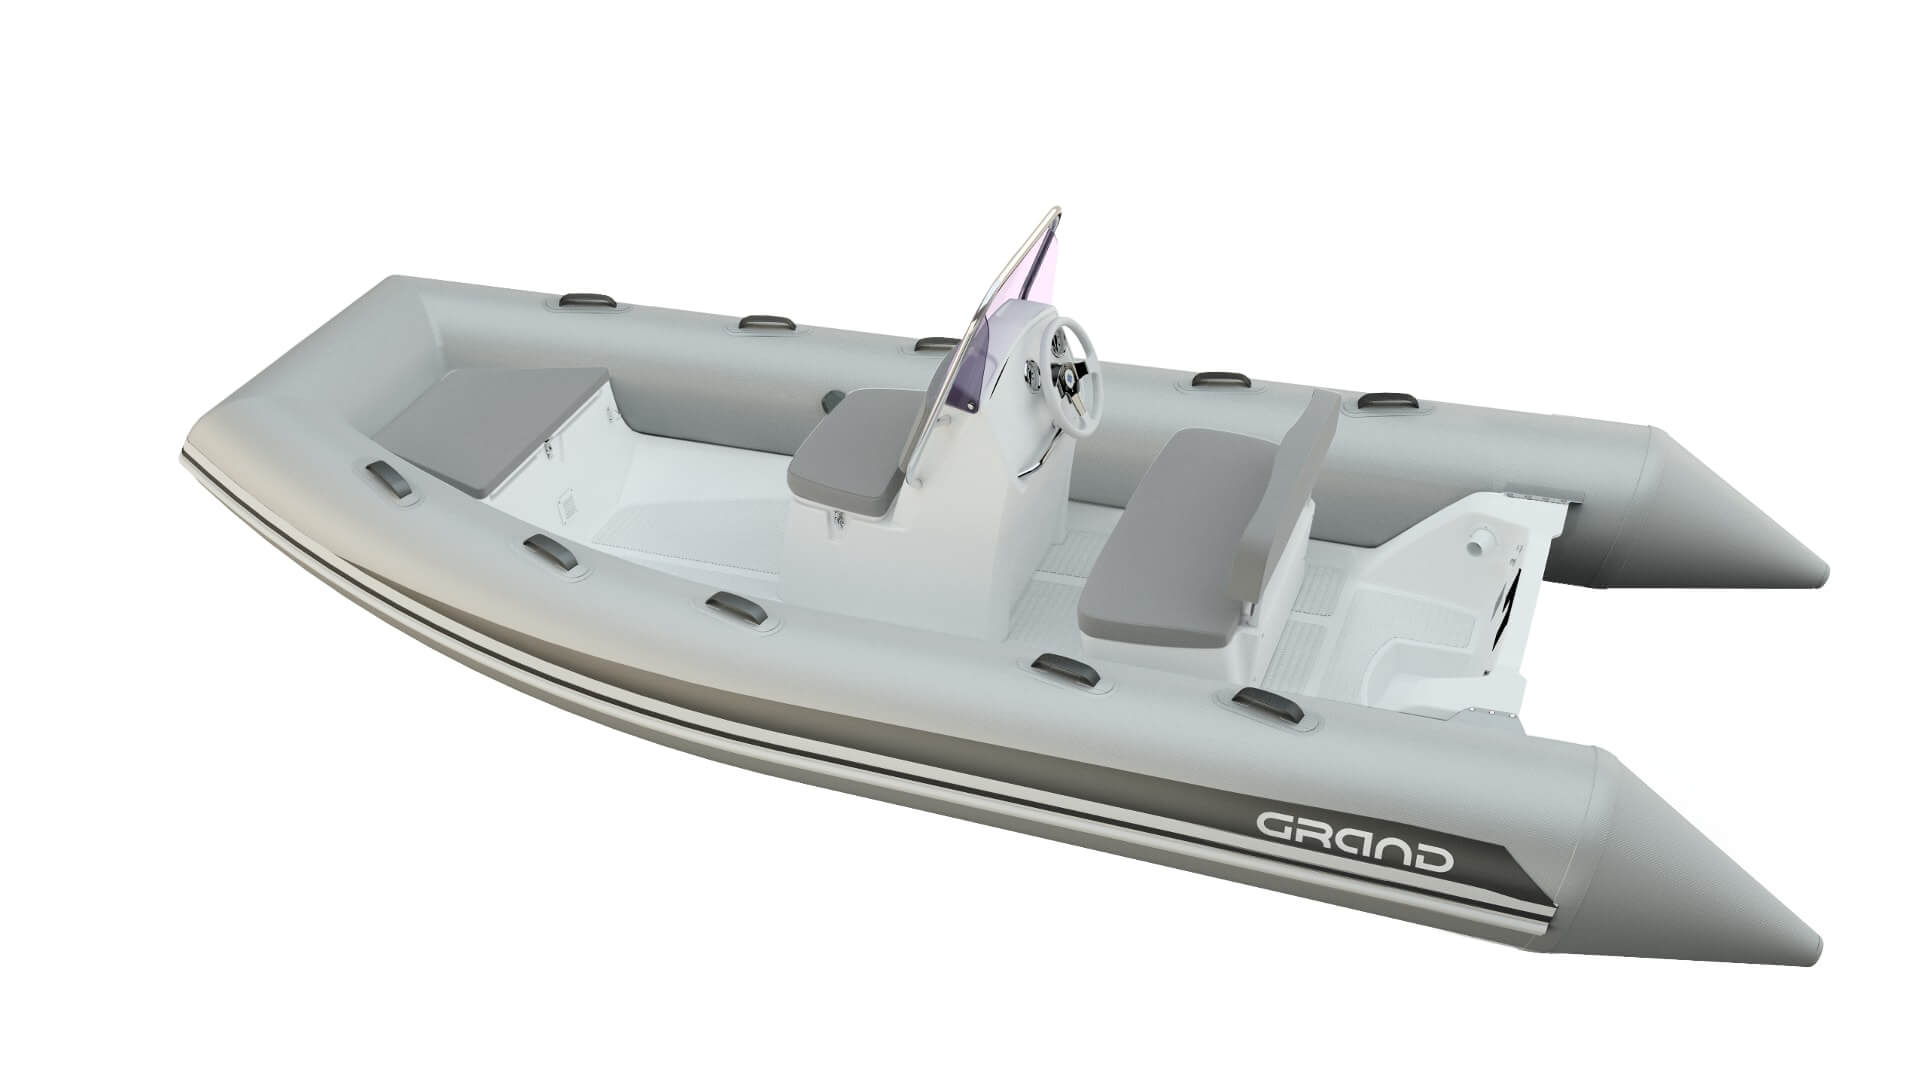 Надувная лодка GRAND Silver Line S470, GRAND Silver Line S470NL, GRAND Silver Line S470NLF, GRAND S470NL, GRAND S470NLF, S470NLF, S470NL, Надувная лодка GRAND, Надувная лодка ГРАНД, Надувная лодка с жестким дном, RIB, Rigid Inflatable Boats